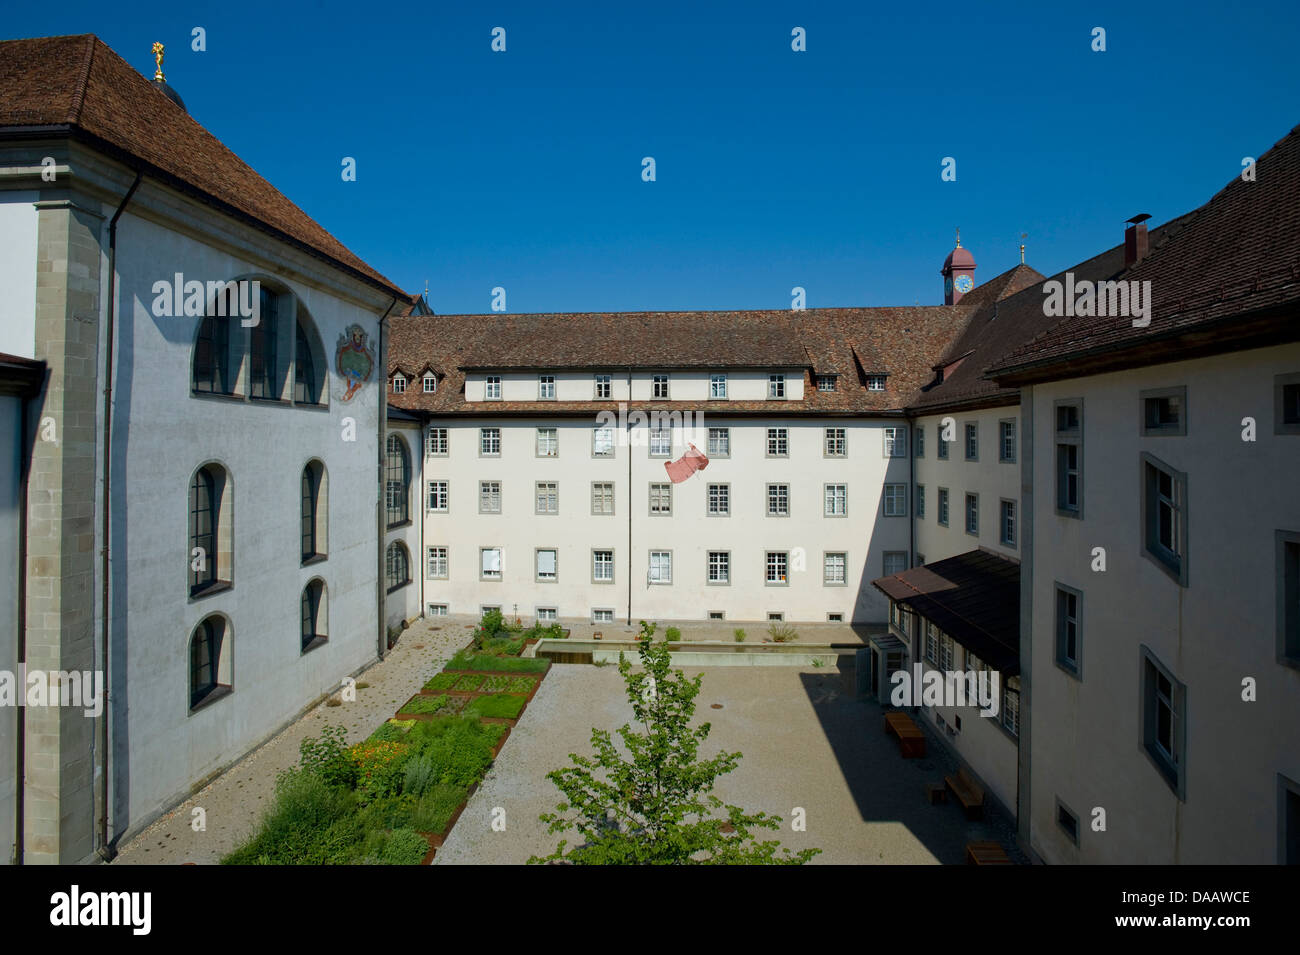 Switzerland, Europe, church, touristical, tradition, Benedictine, cloister, Einsiedeln, canton, Schwyz, courtyard, vegetable gar Stock Photo